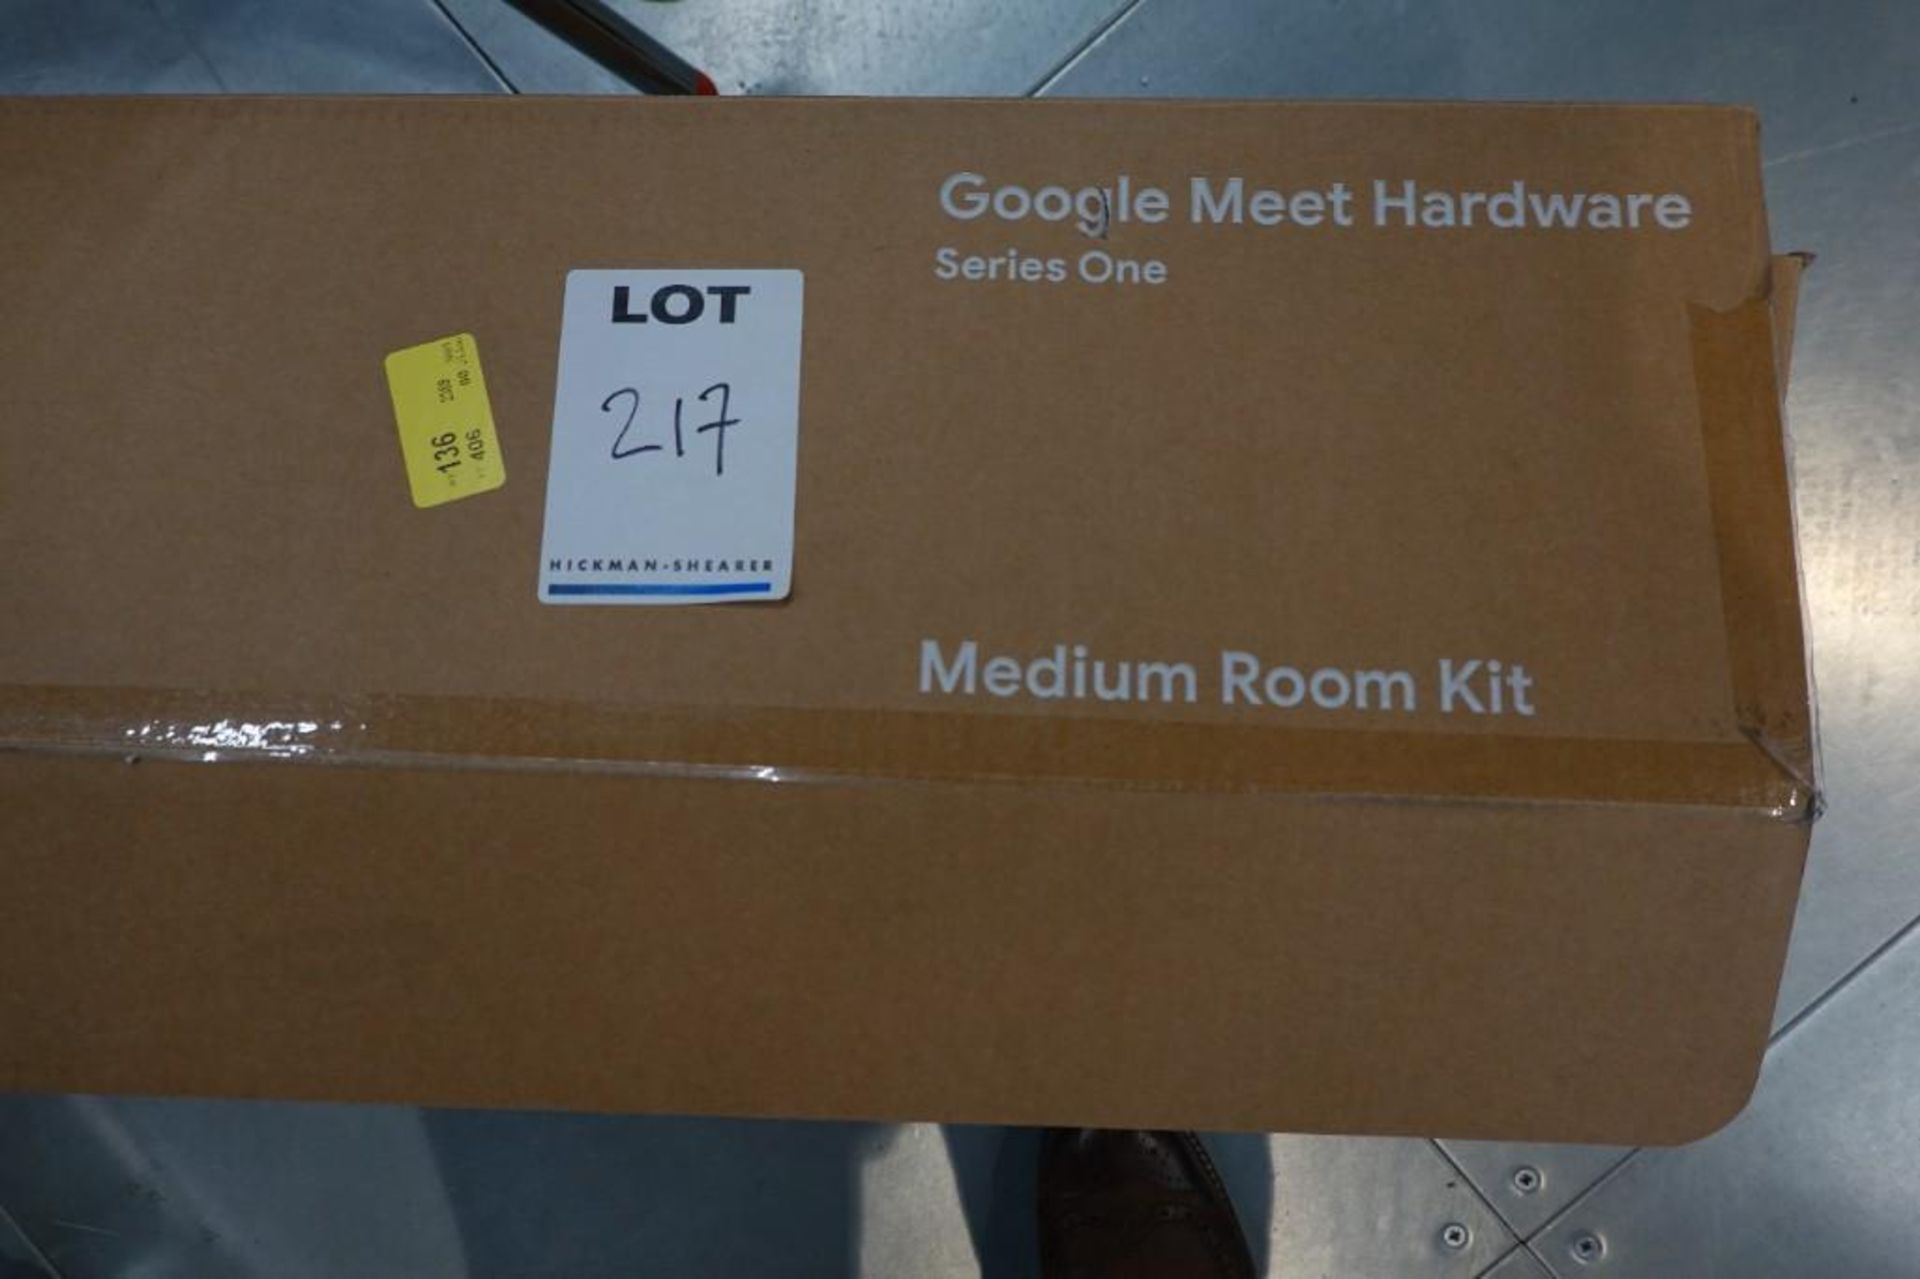 Google Meet Lenovo Series One Medium Room Kit